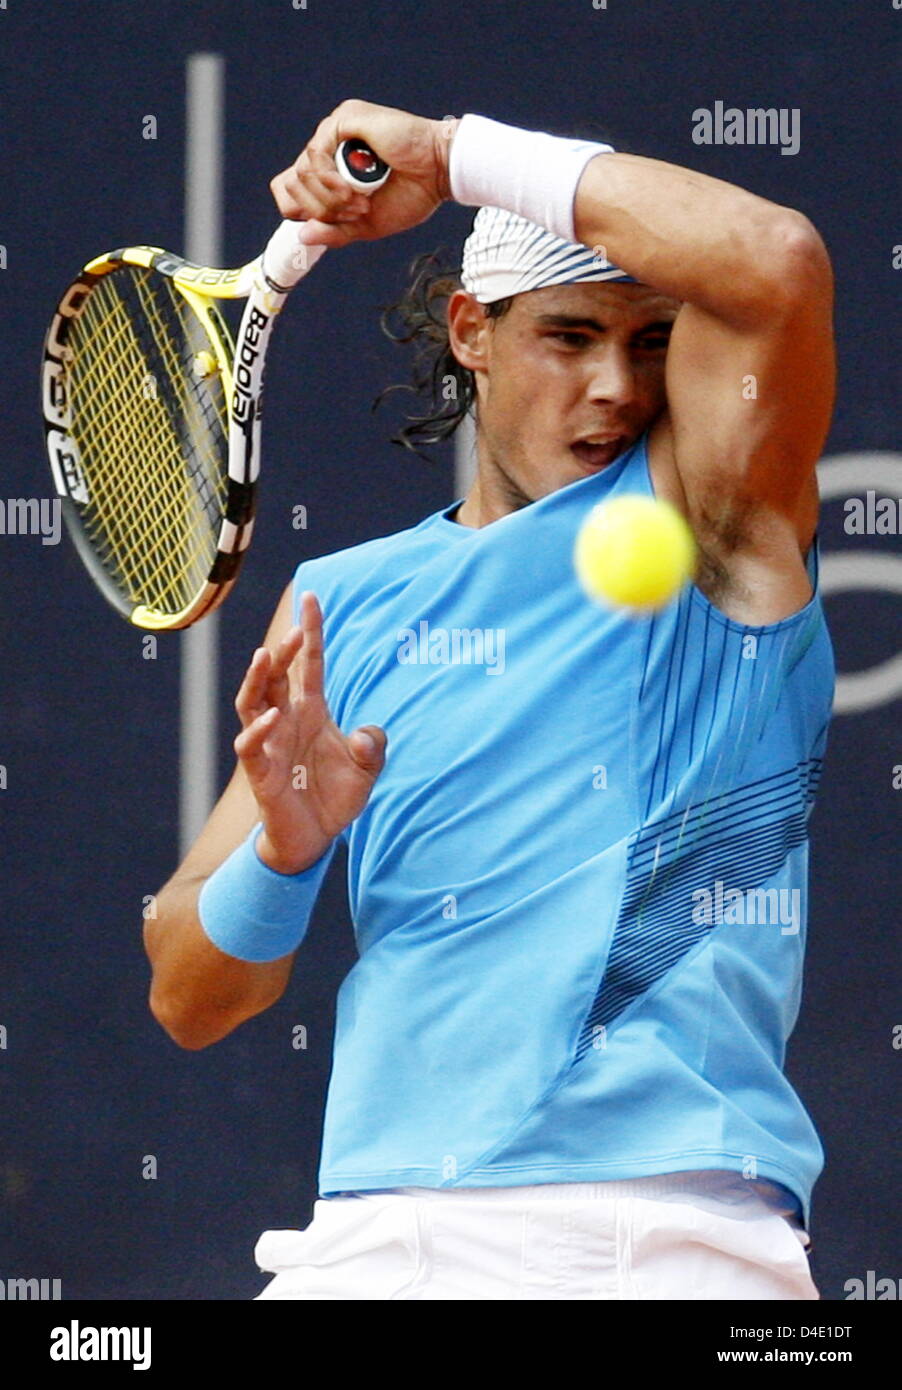 L'Espagnol Rafael Nadal joue un coup droit contre l'Italien Starce durant son deuxième tour de l'ATP Masters Series à Rothenbaum à Hambourg, Allemagne, 14 mai 2008. Photo : Maurizio Gambarini Banque D'Images